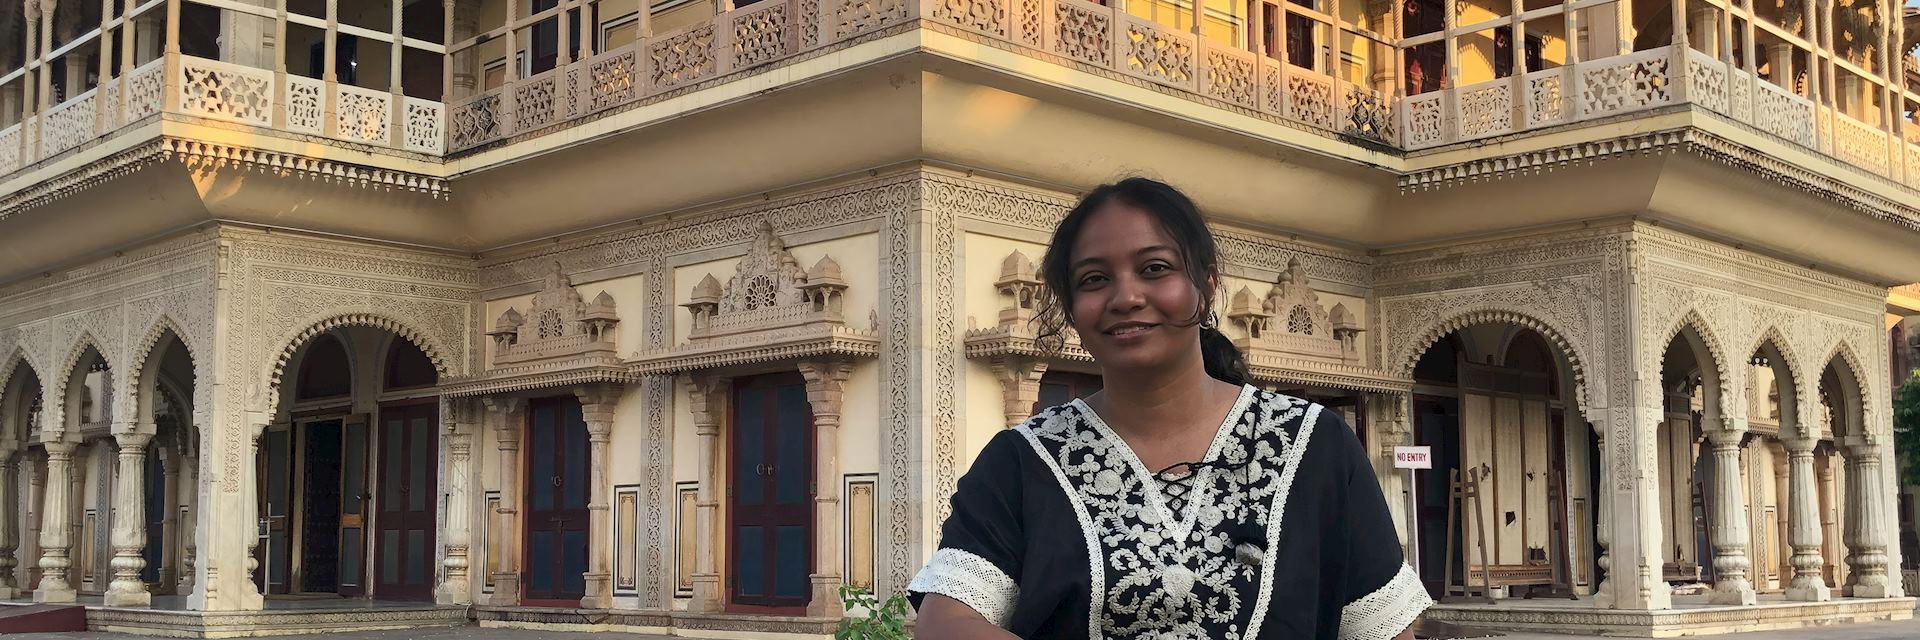 Anupama at the Amber Palace, Jaipur, India